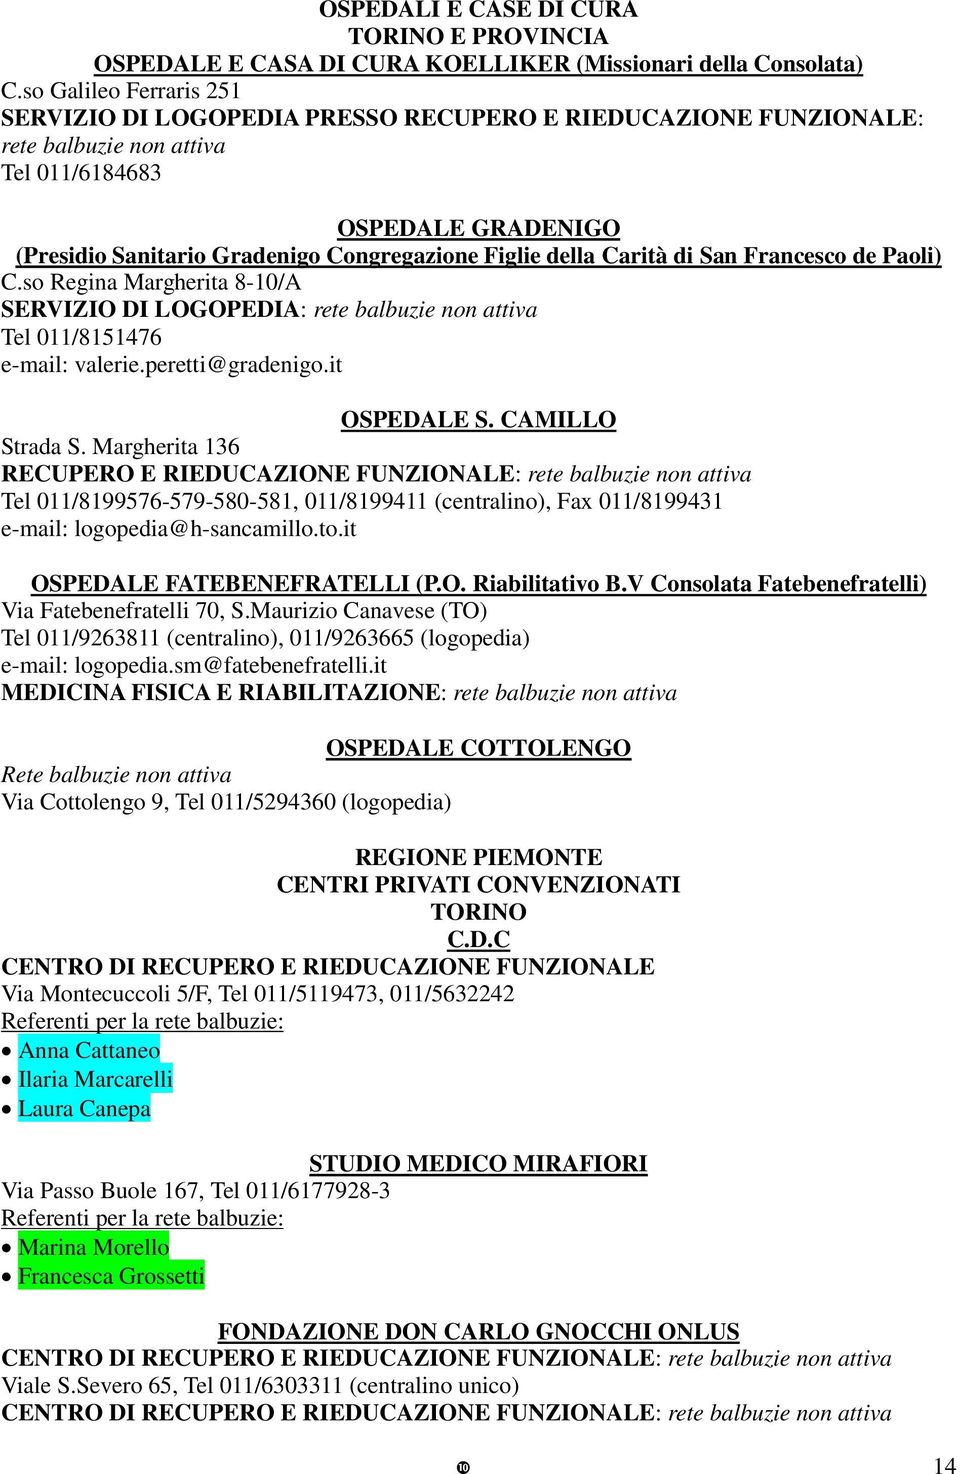 Paoli) C.so Regina Margherita 8-10/A SERVIZIO DI LOGOPEDIA: rete balbuzie non attiva Tel 011/8151476 e-mail: valerie.peretti@gradenigo.it OSPEDALE S. CAMILLO Strada S.